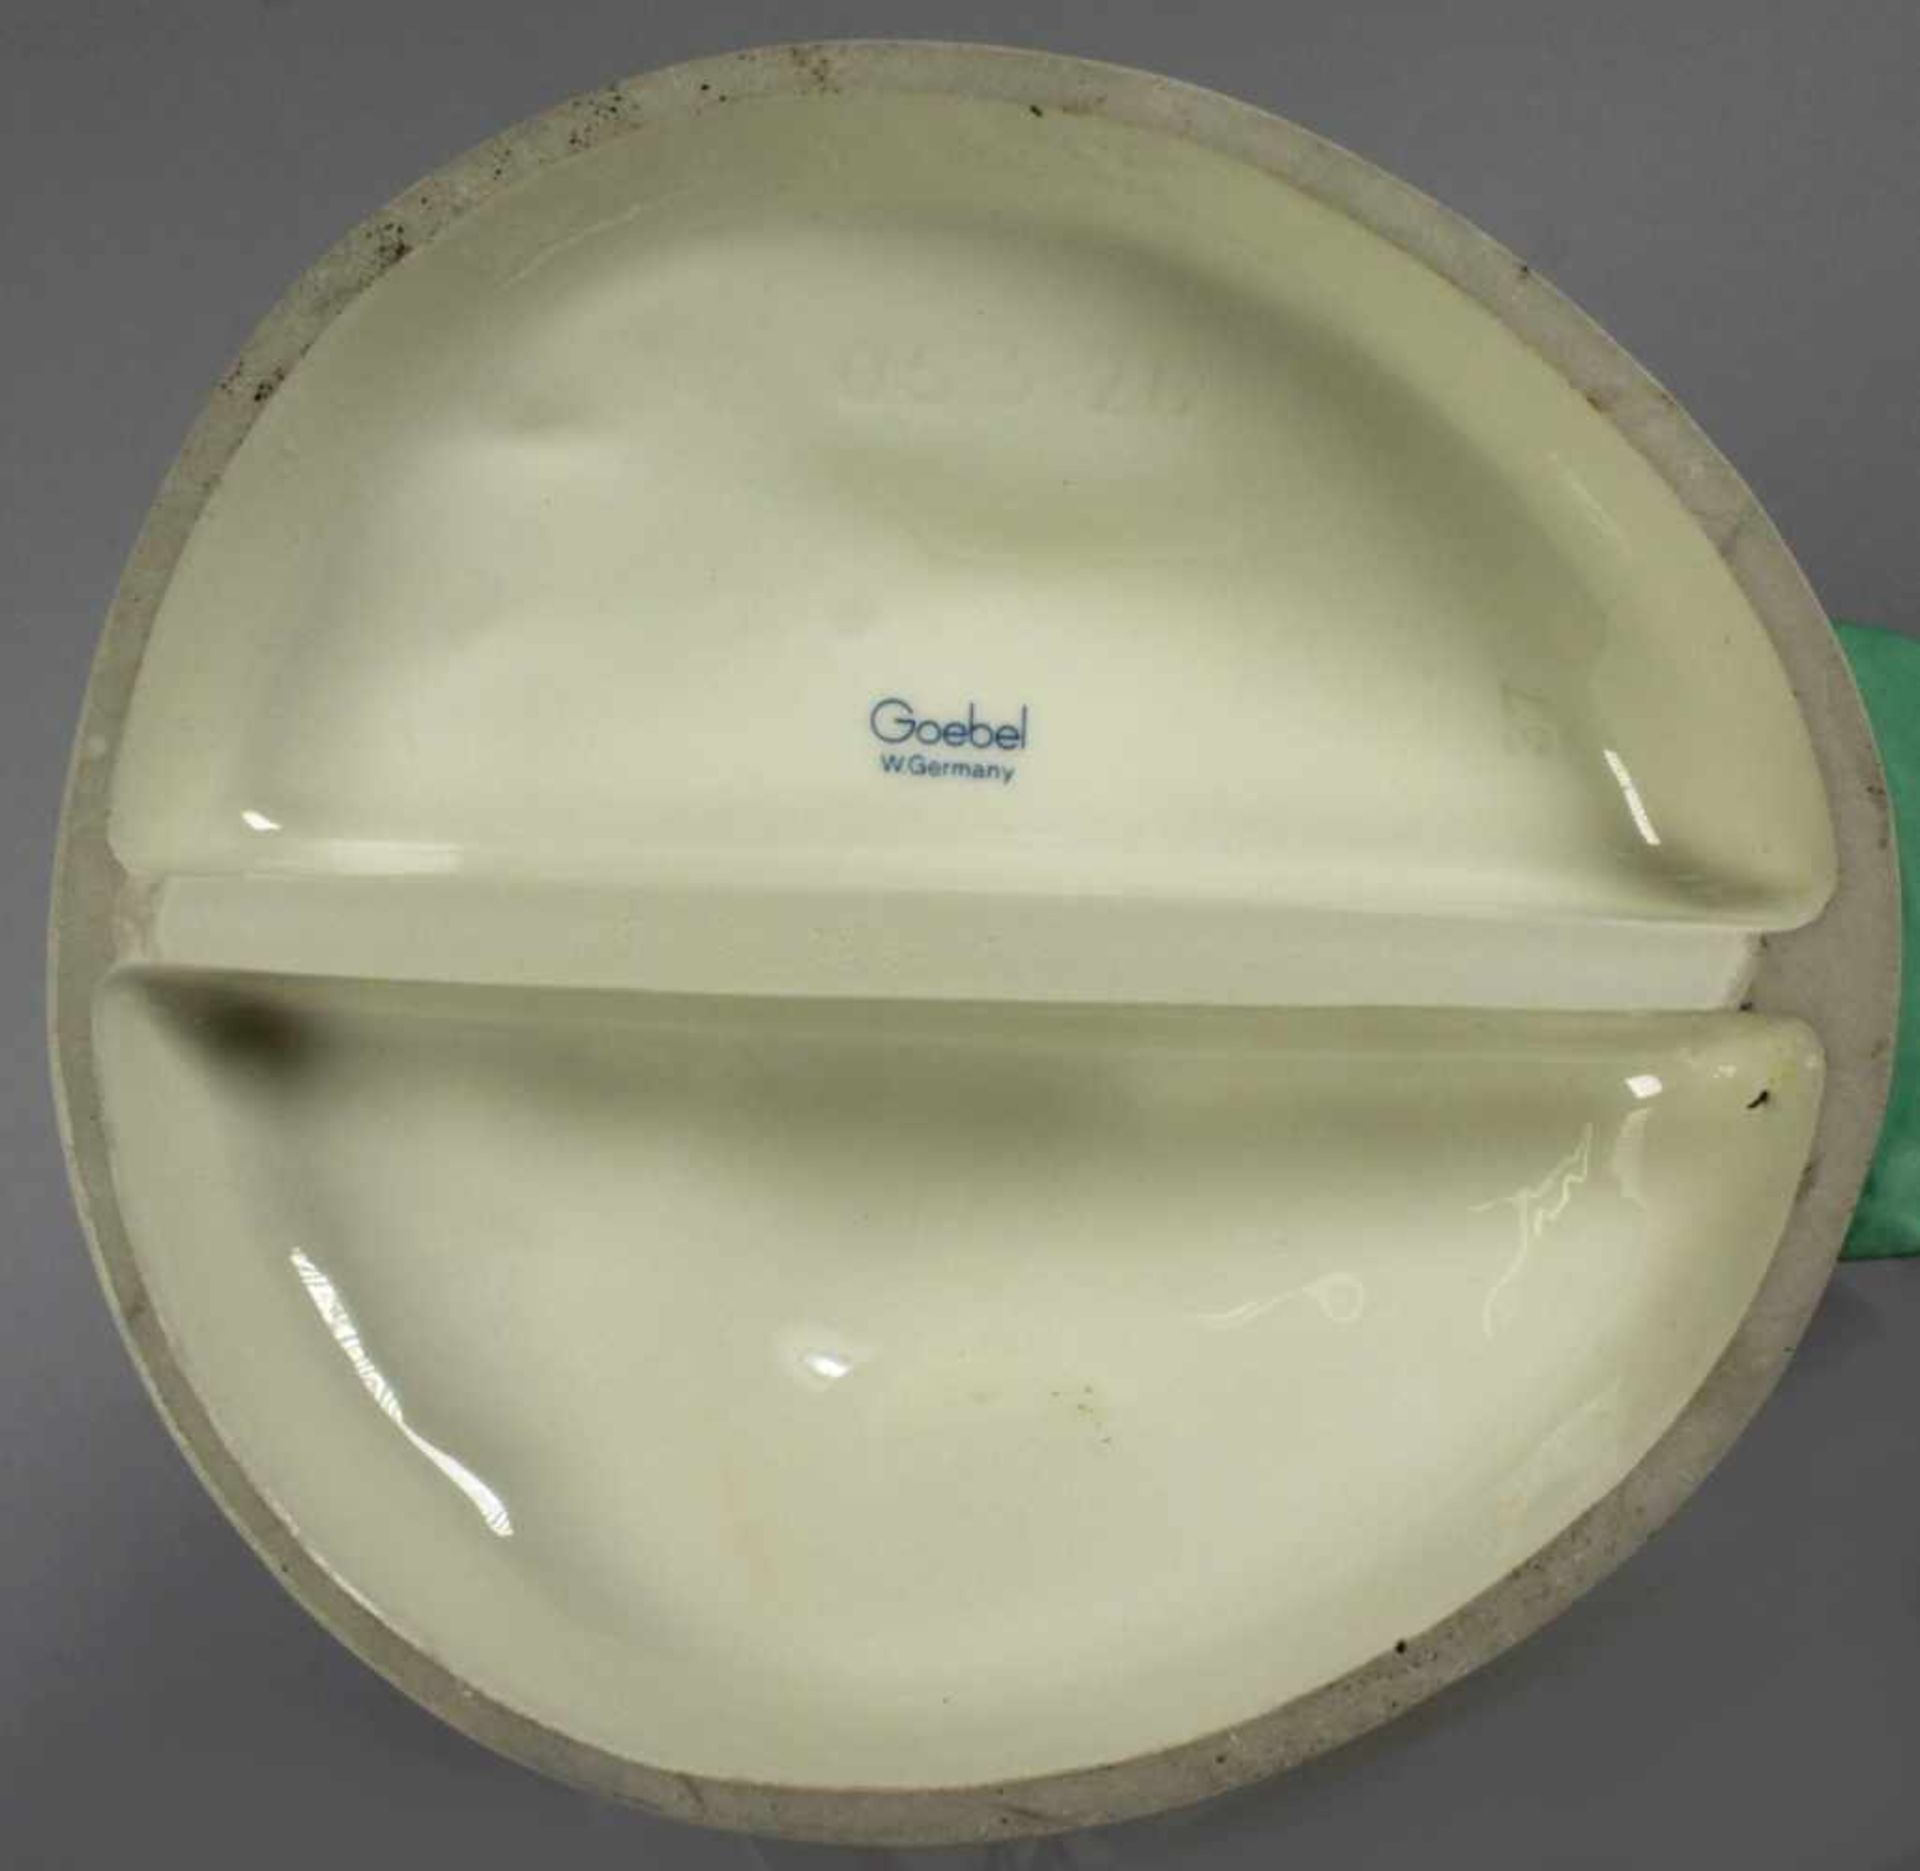 Porzellan-Tierplastik, "Ente", Goebel, 2. Hälfte 20. Jh., auf Rundsockel vollplastischeDarstell - Bild 3 aus 3